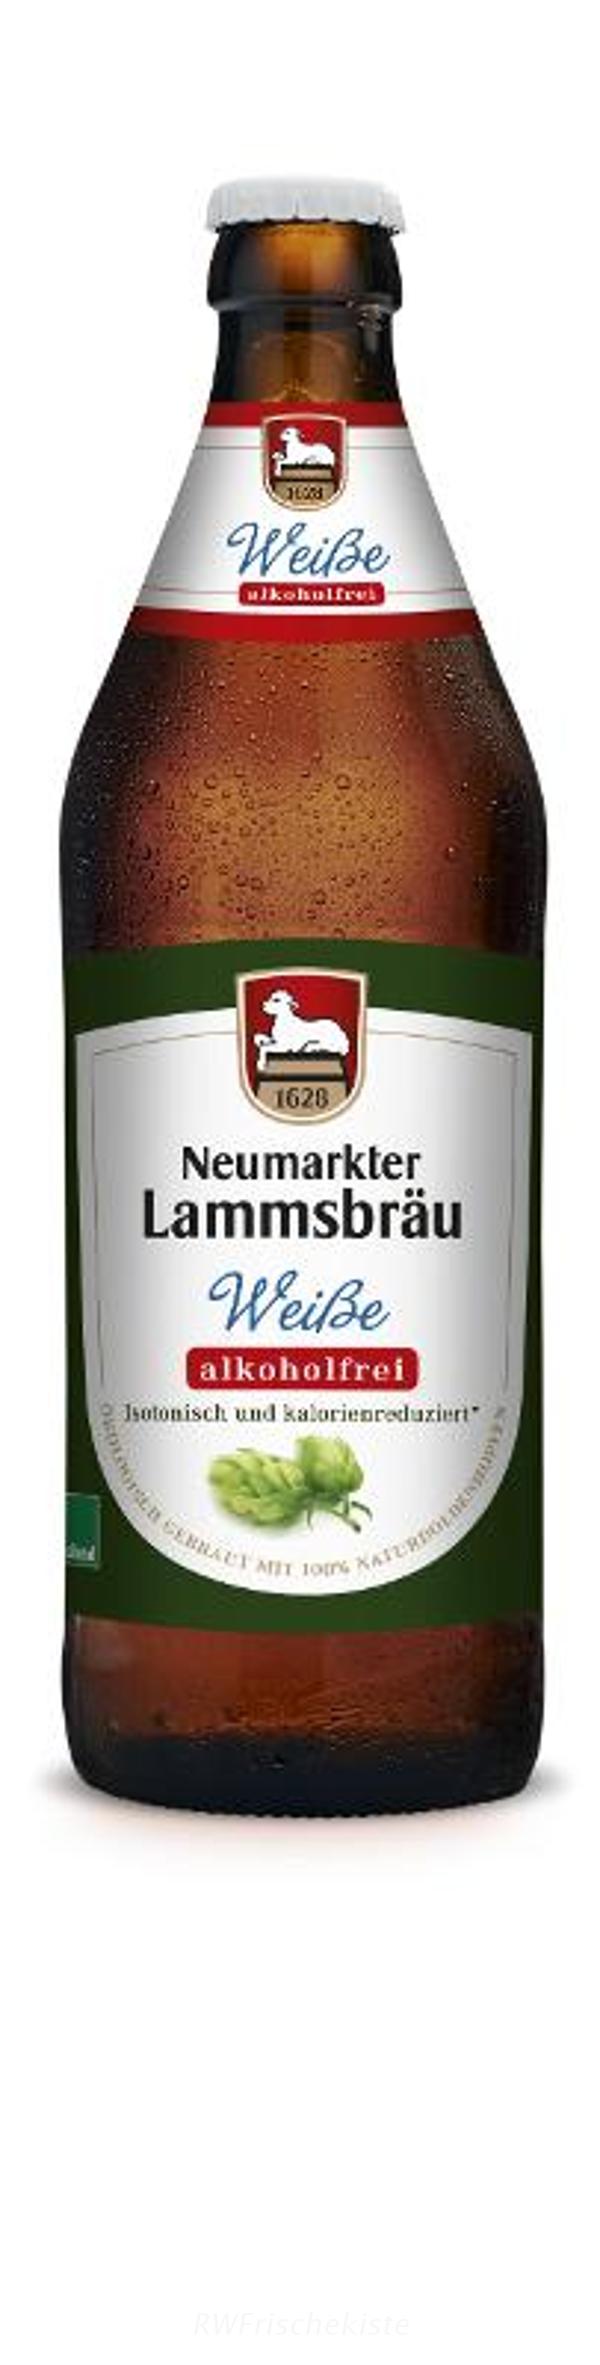 Produktfoto zu Lammsbräu Weisse alkoholfrei Kasten